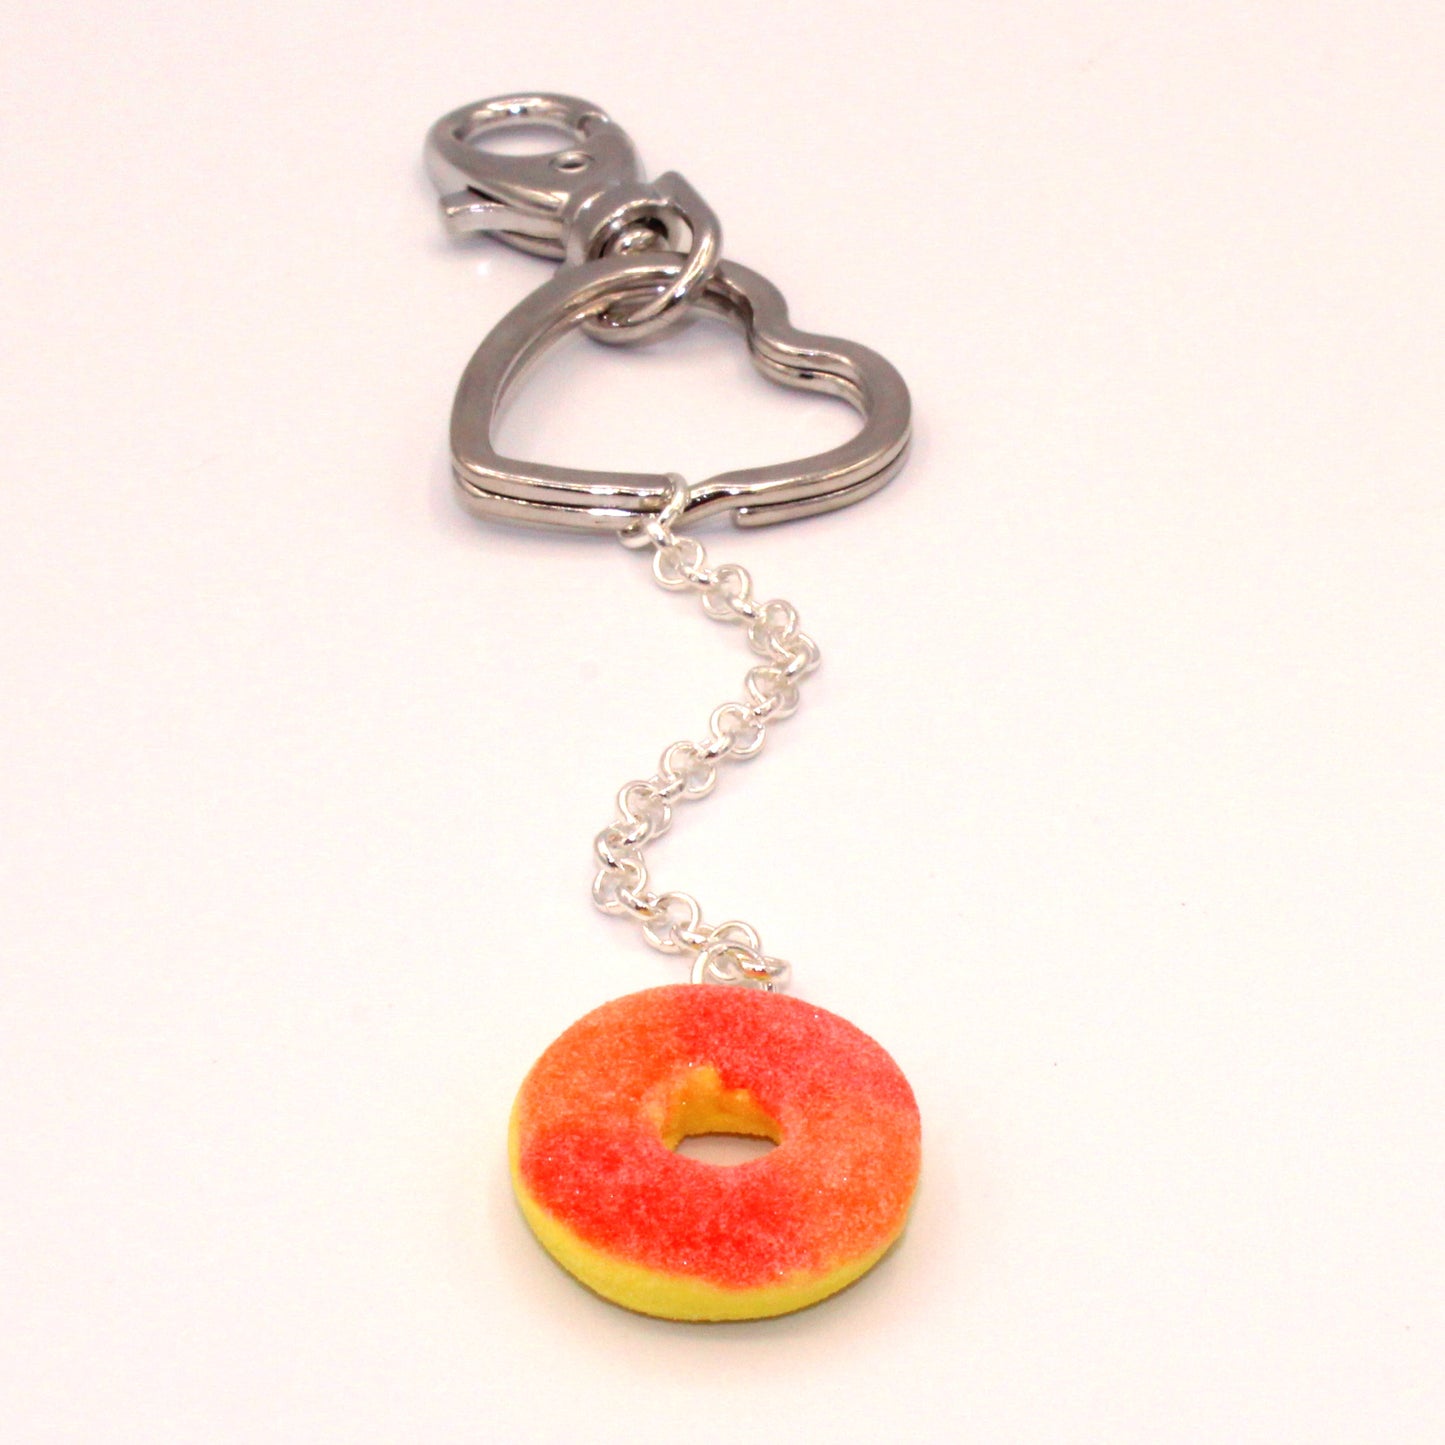 Gummy Peach Ring Keychain - Fatally Feminine Designs